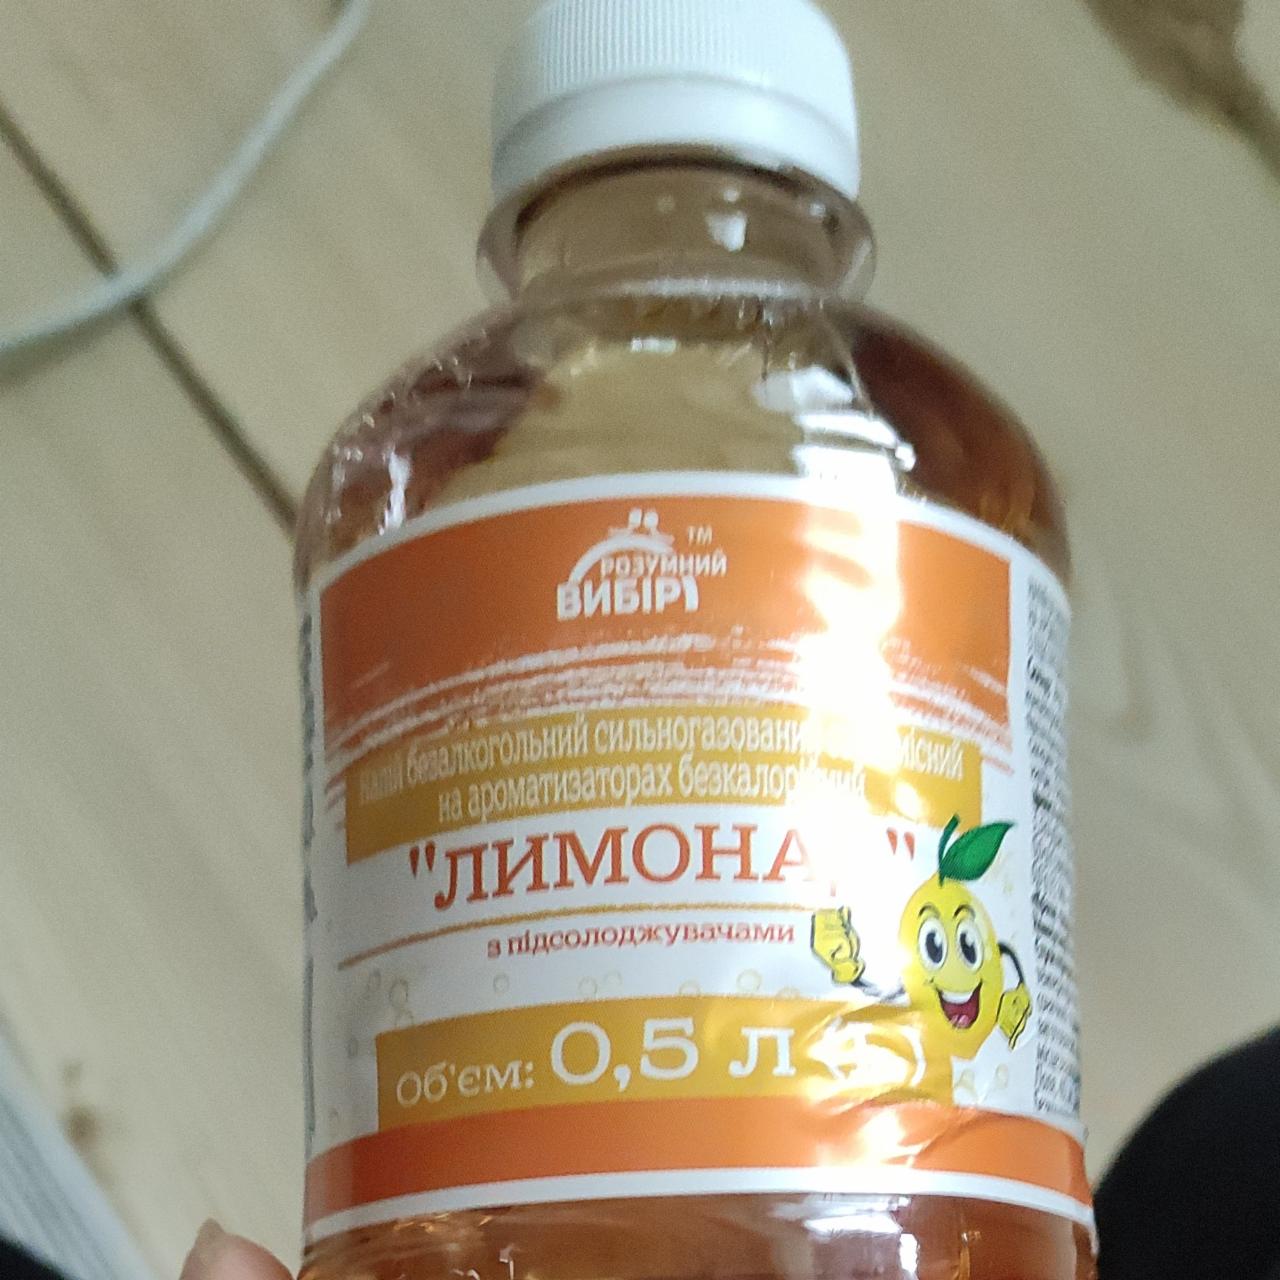 Фото - Напиток безалкогольный сильногазированный на ароматизаторах безакалорийный Лимонад Своя Линия